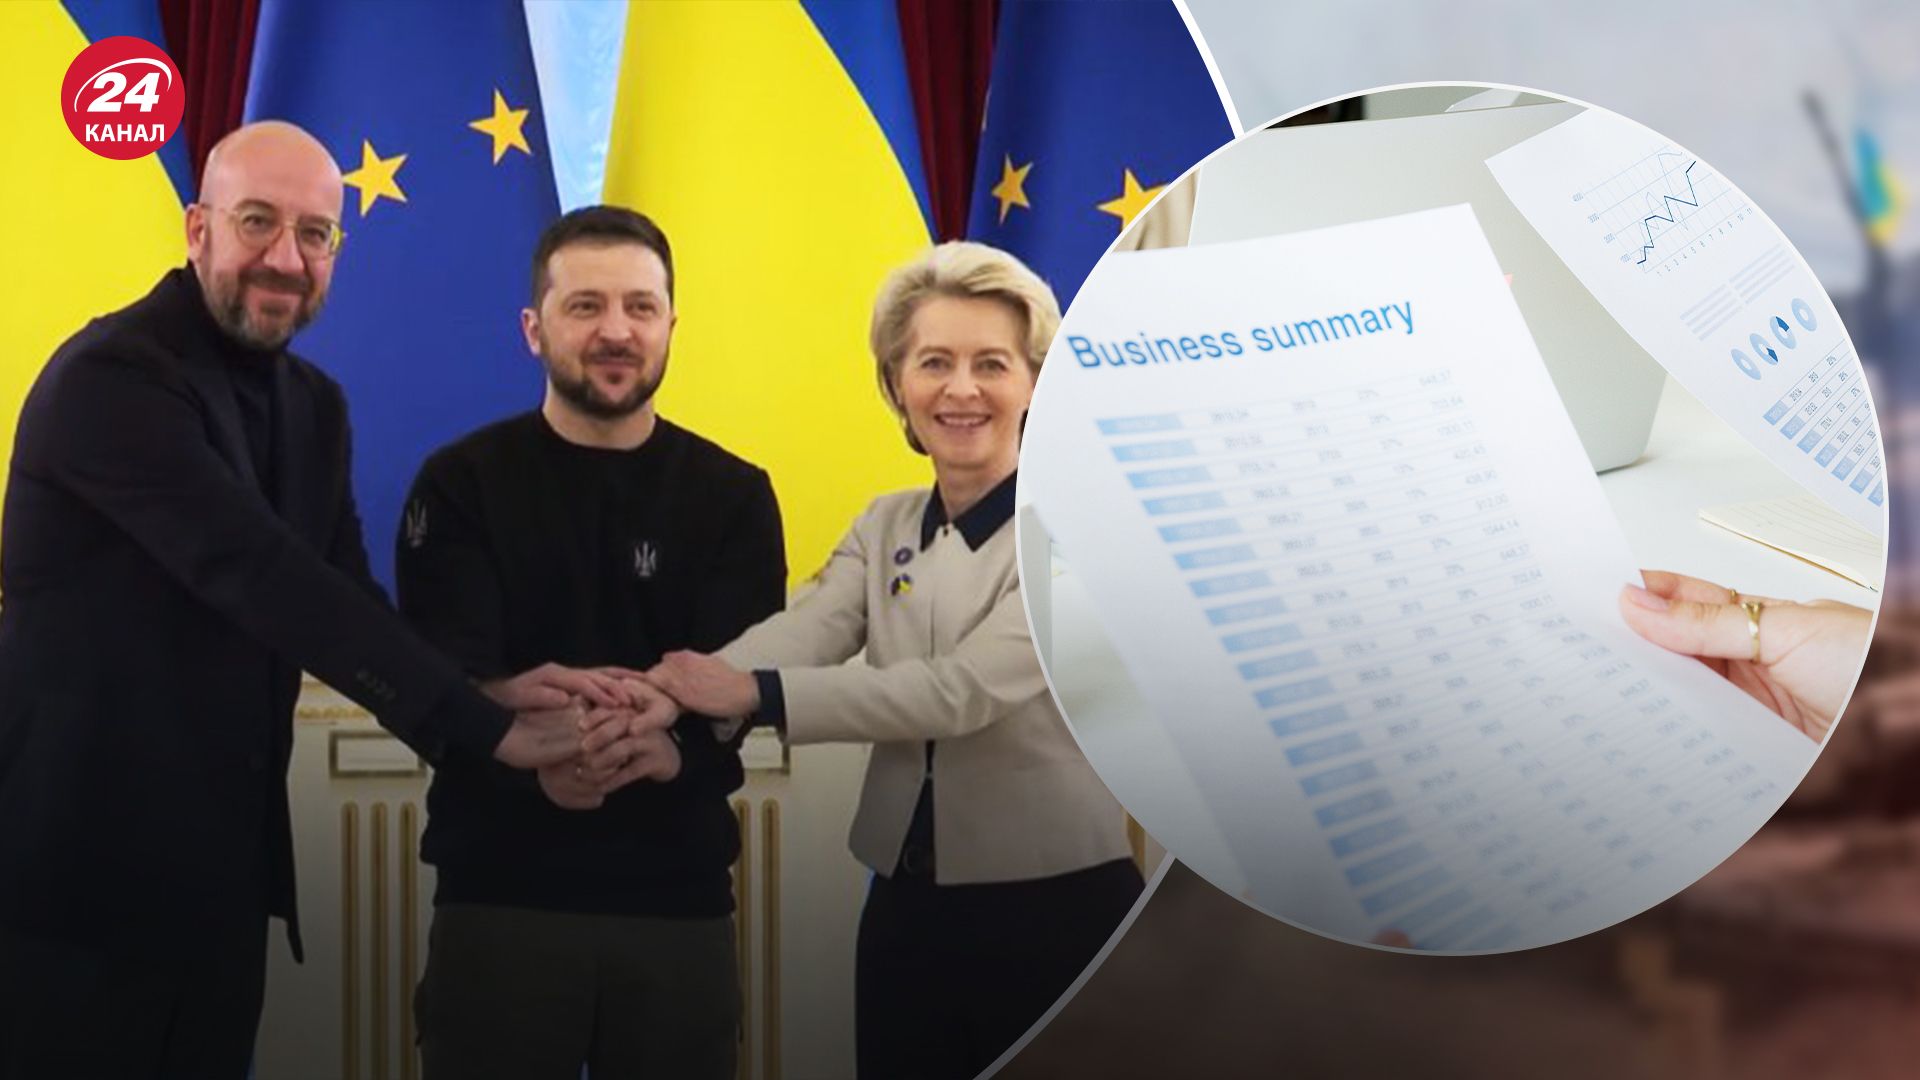 Евросоюз дает положительные сигналы по инвестициям в Украину